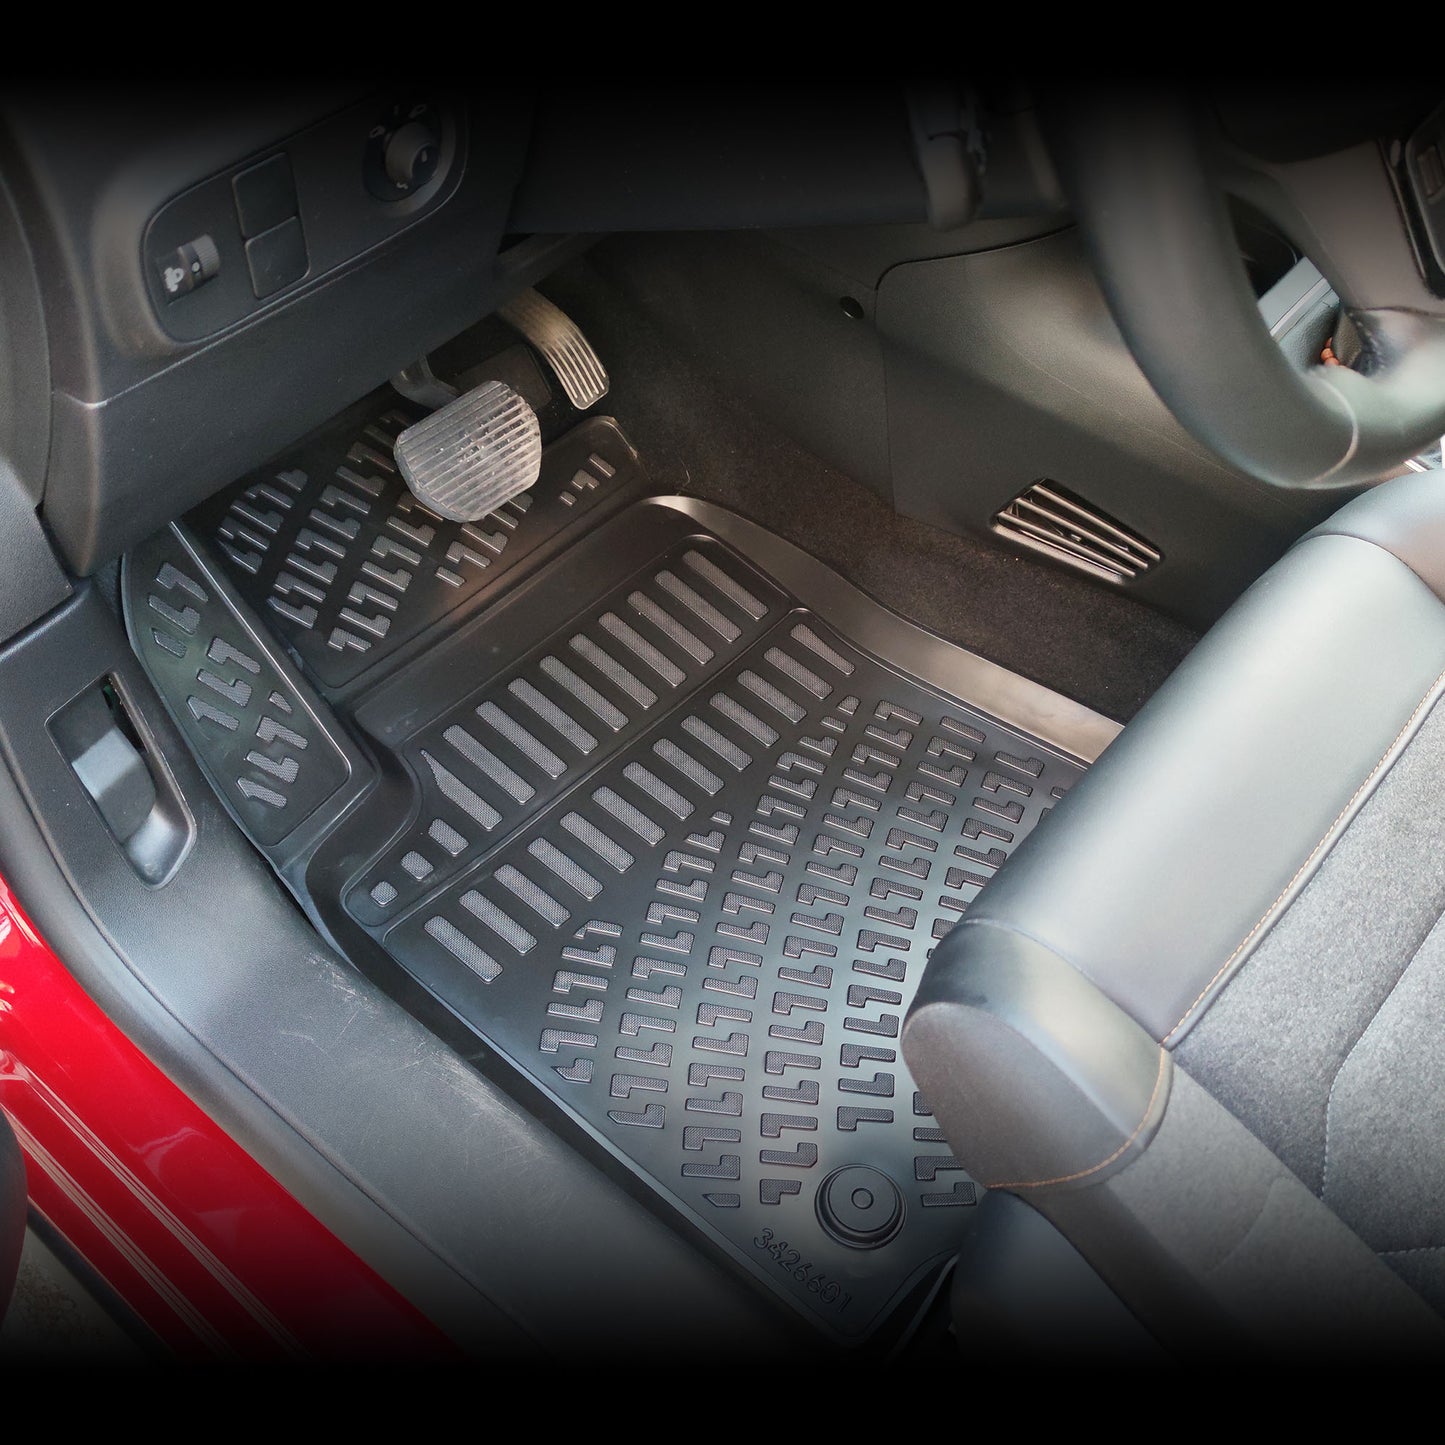 Ford Fiesta Kauçuk Paspas Aksesuarları Detaylı Resimleri, Kampanya bilgileri ve fiyatı - 5